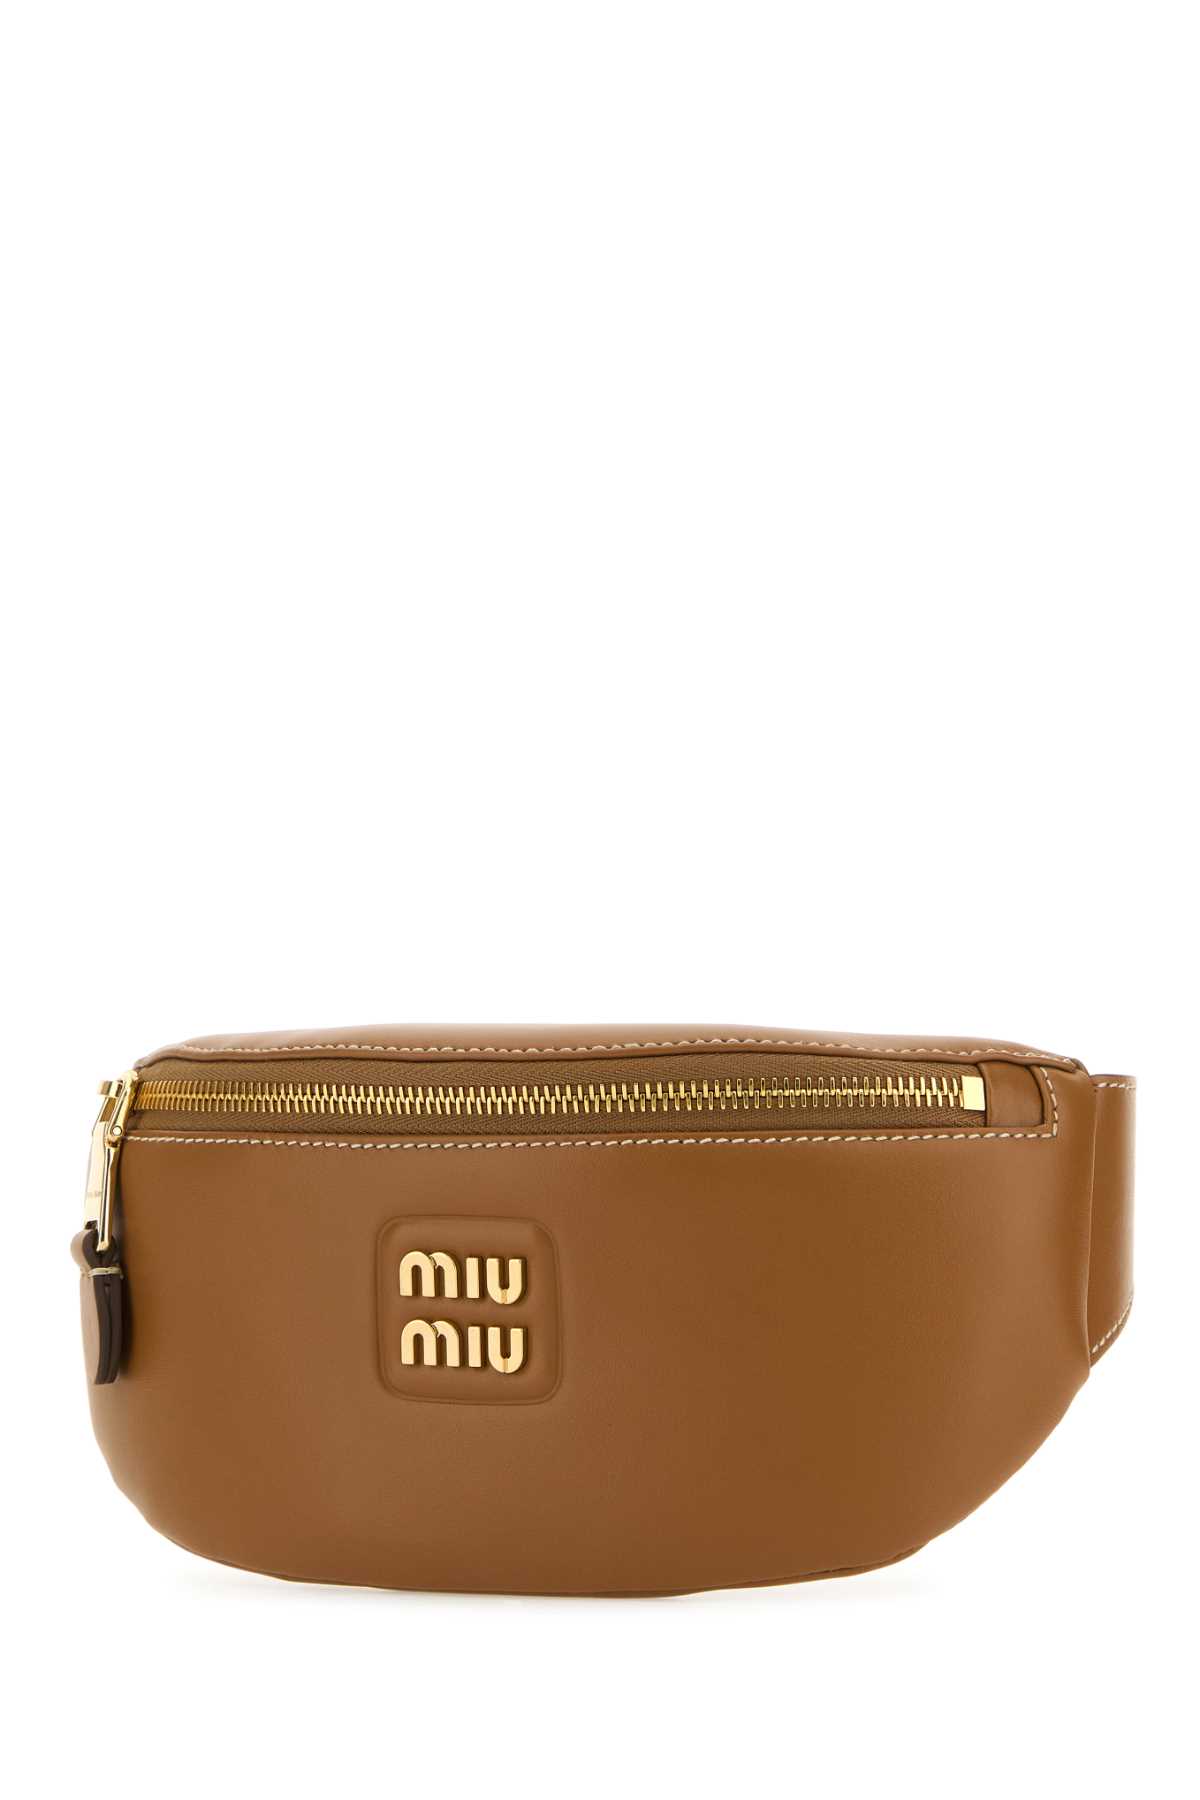 Shop Miu Miu Caramel Leather Belt Bag